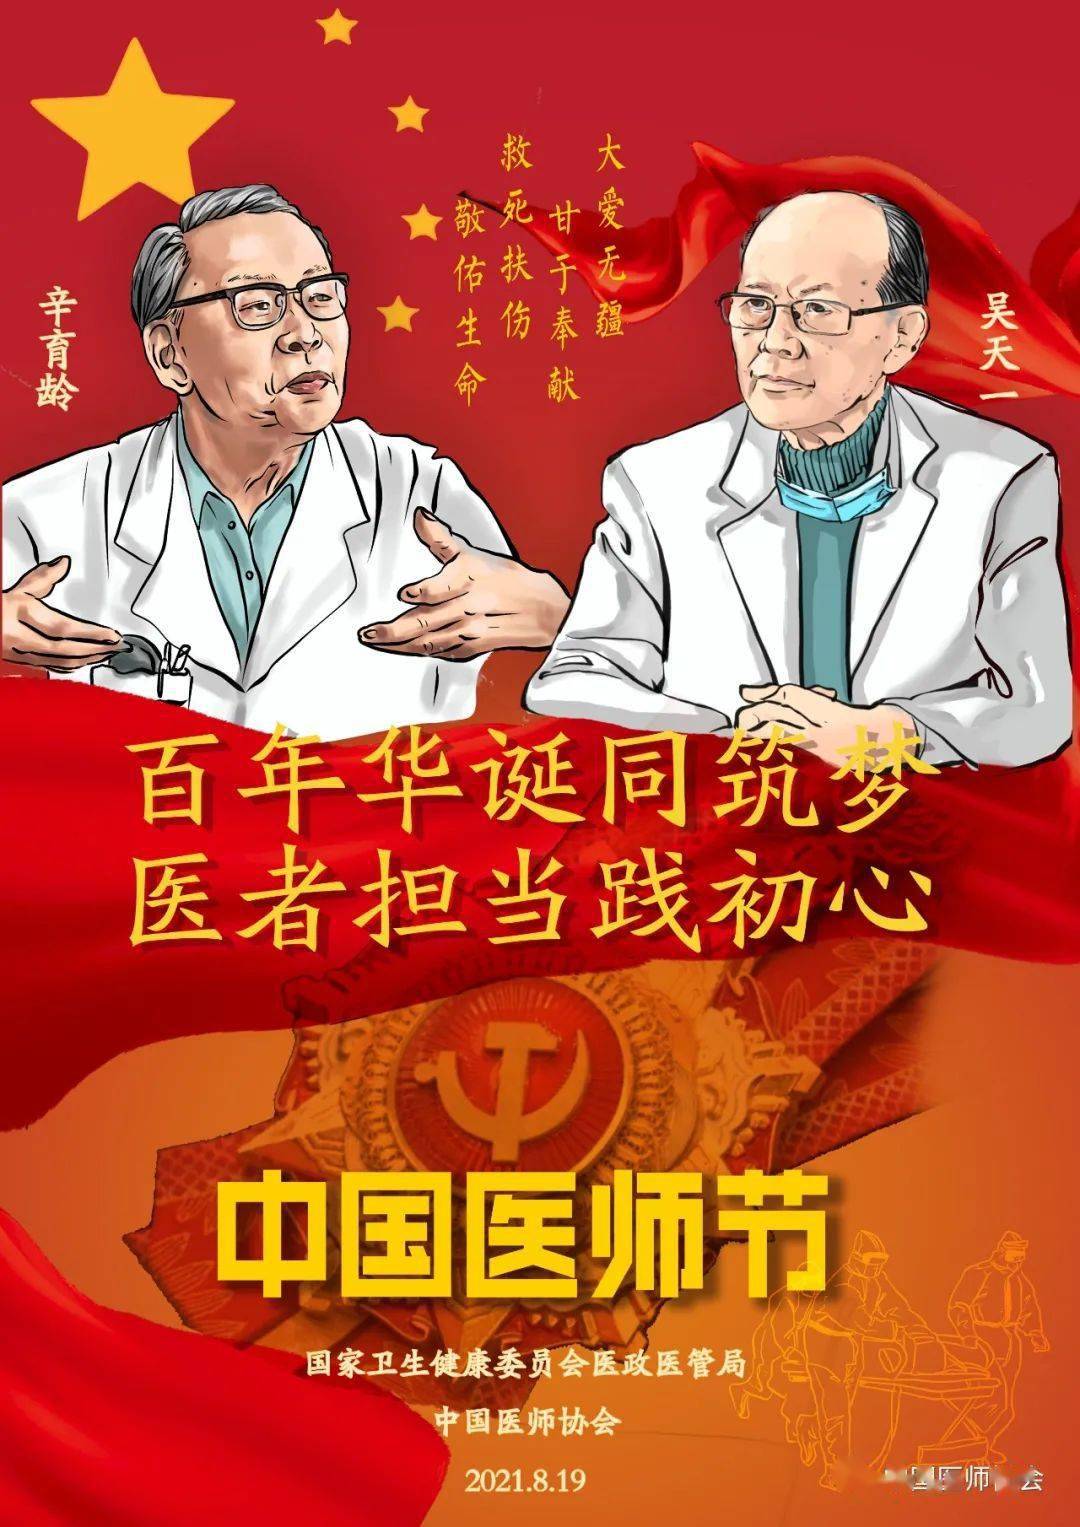 直播预告 | 明天上午9点,2021年中国医师节庆祝会邀您